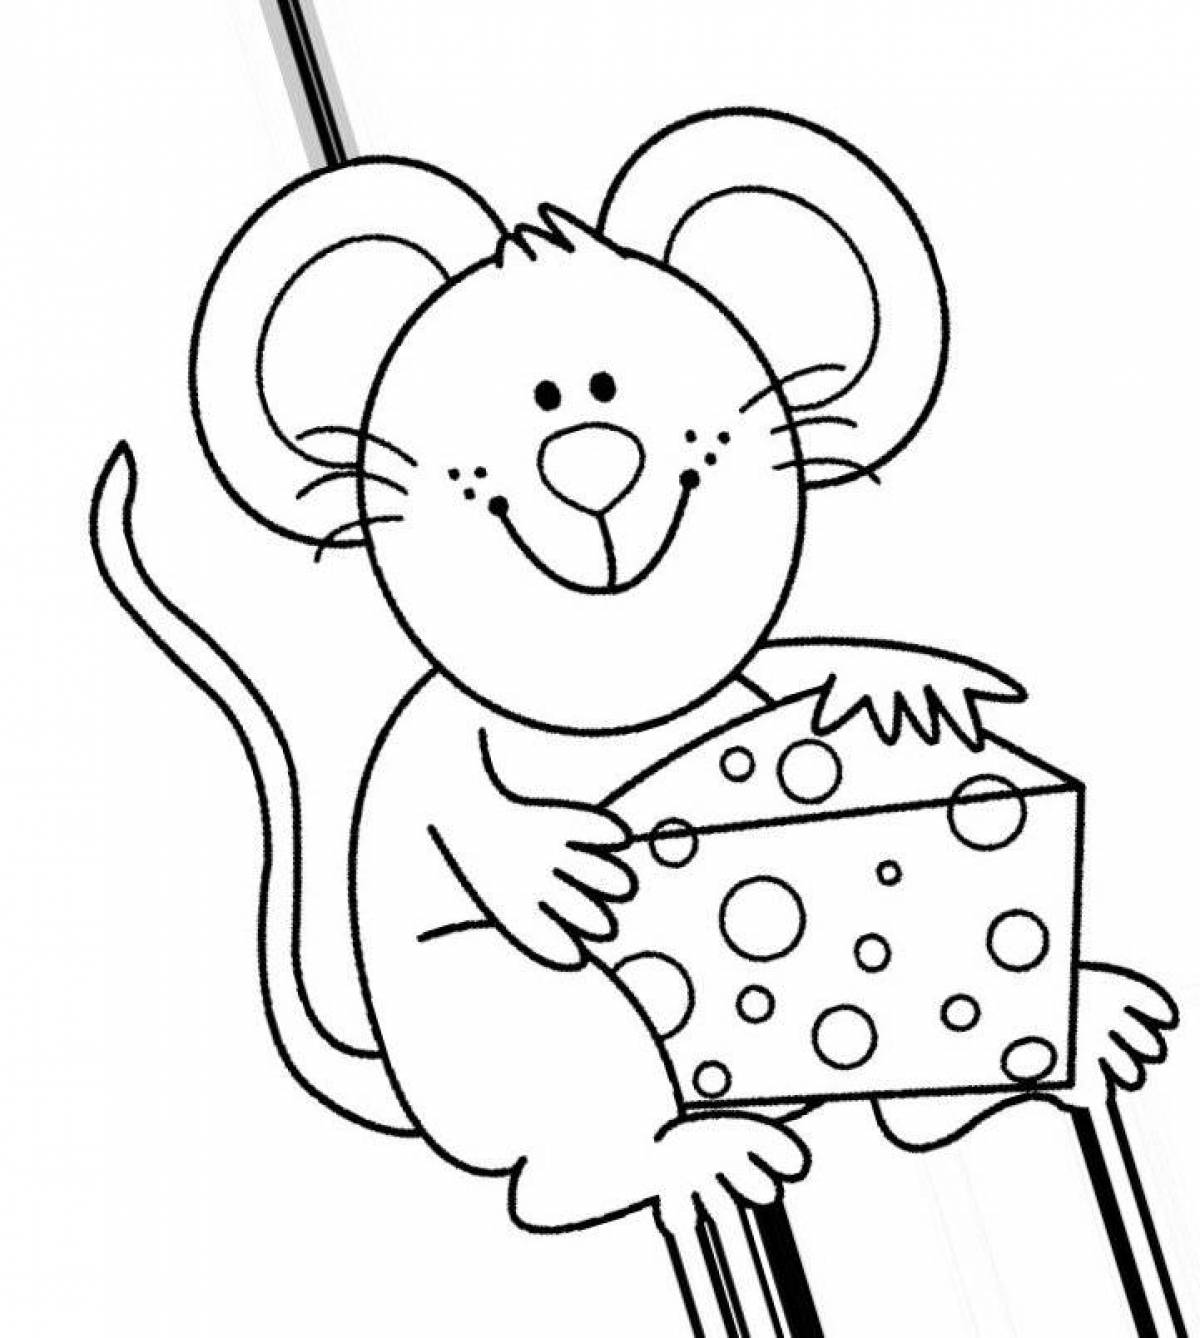 Веселая раскраска мышь для детей